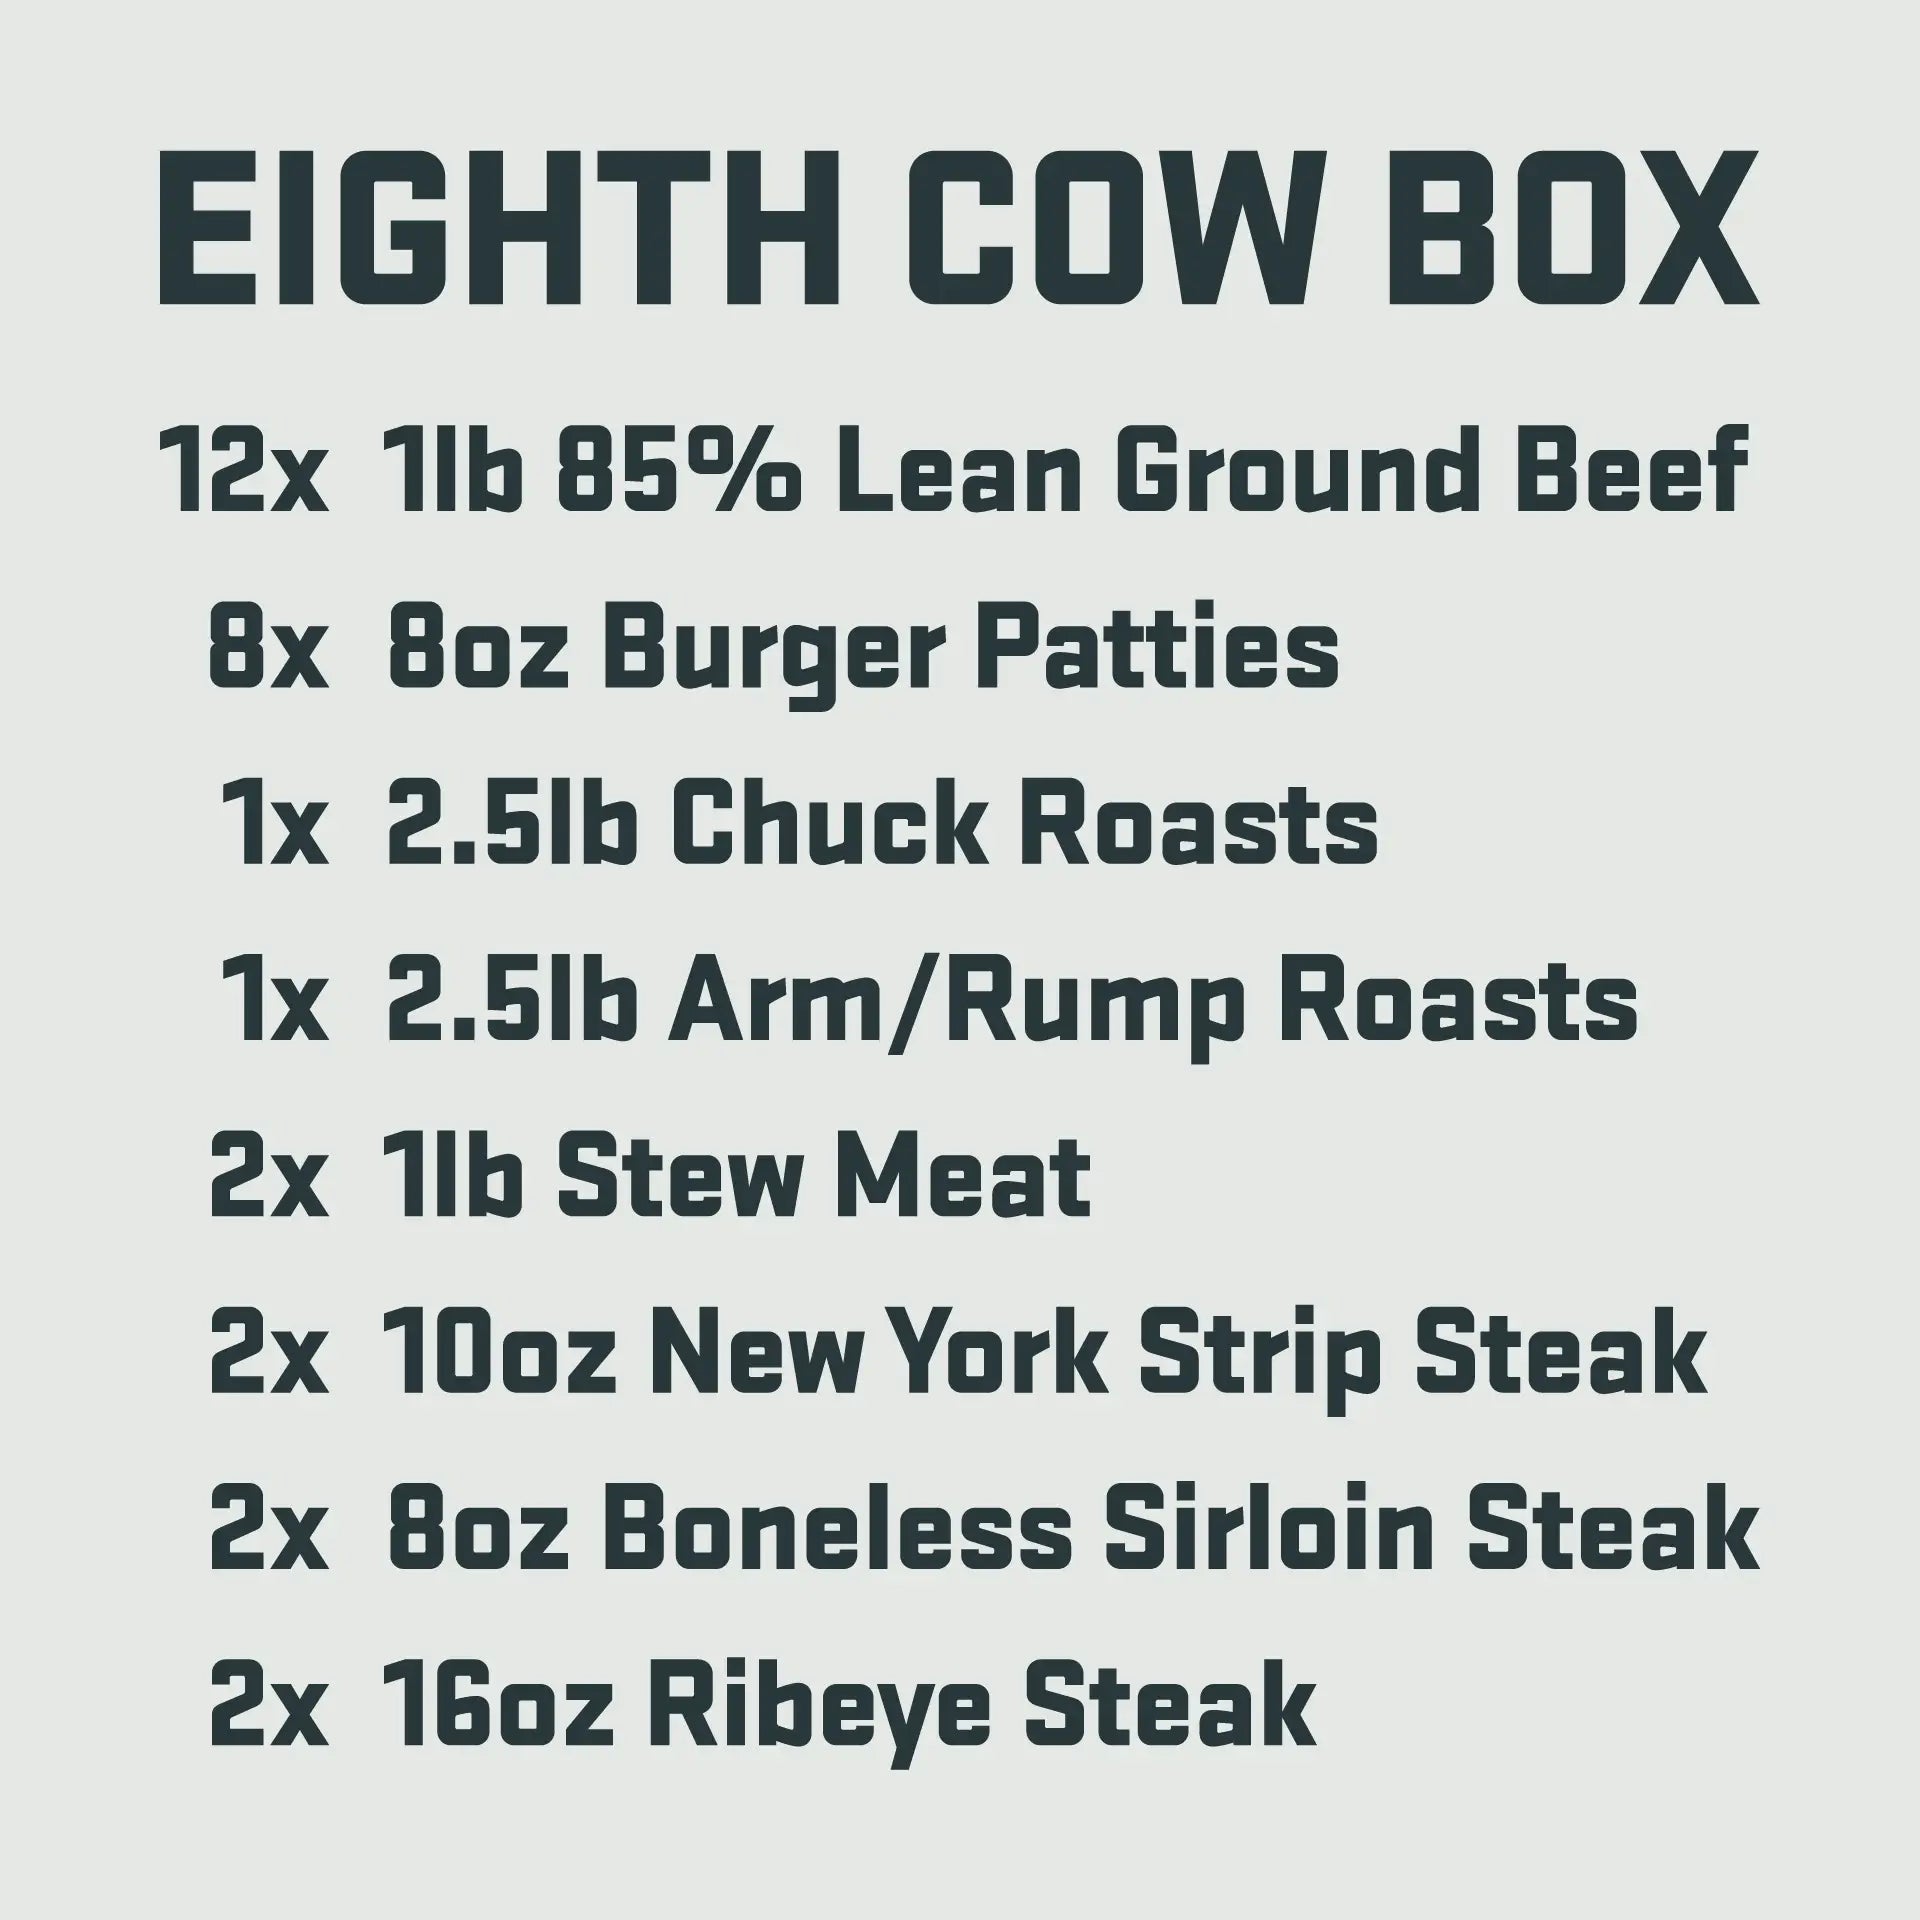 Eighth Cow Box